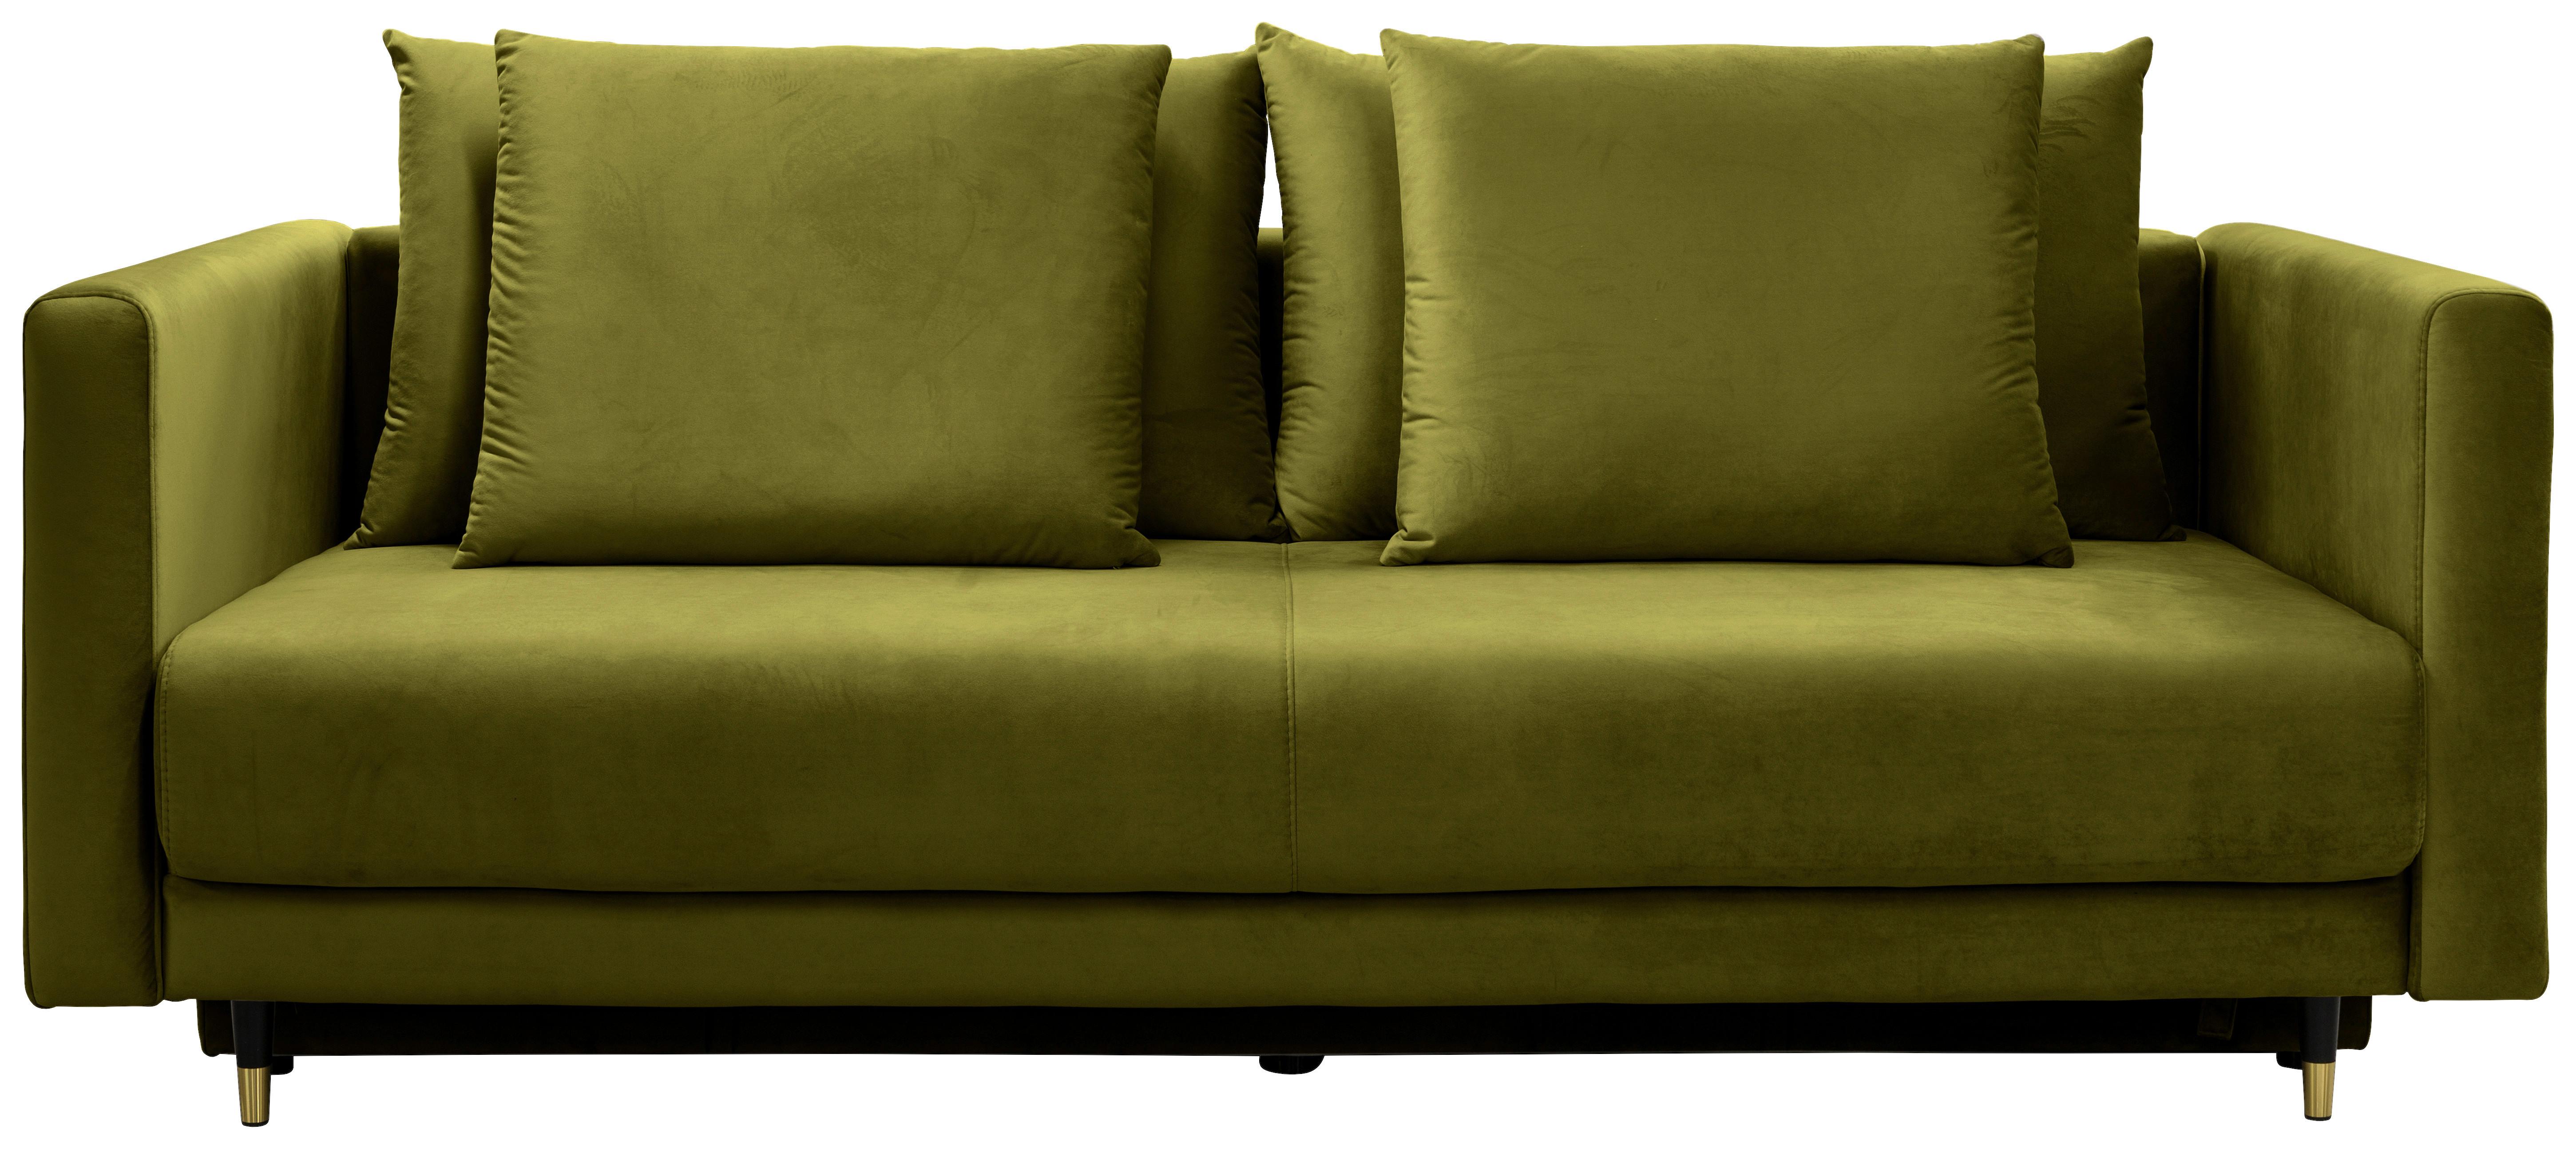 Canapea extensibilă Vivien - măsliniu, Modern, textil (225/96/118cm)